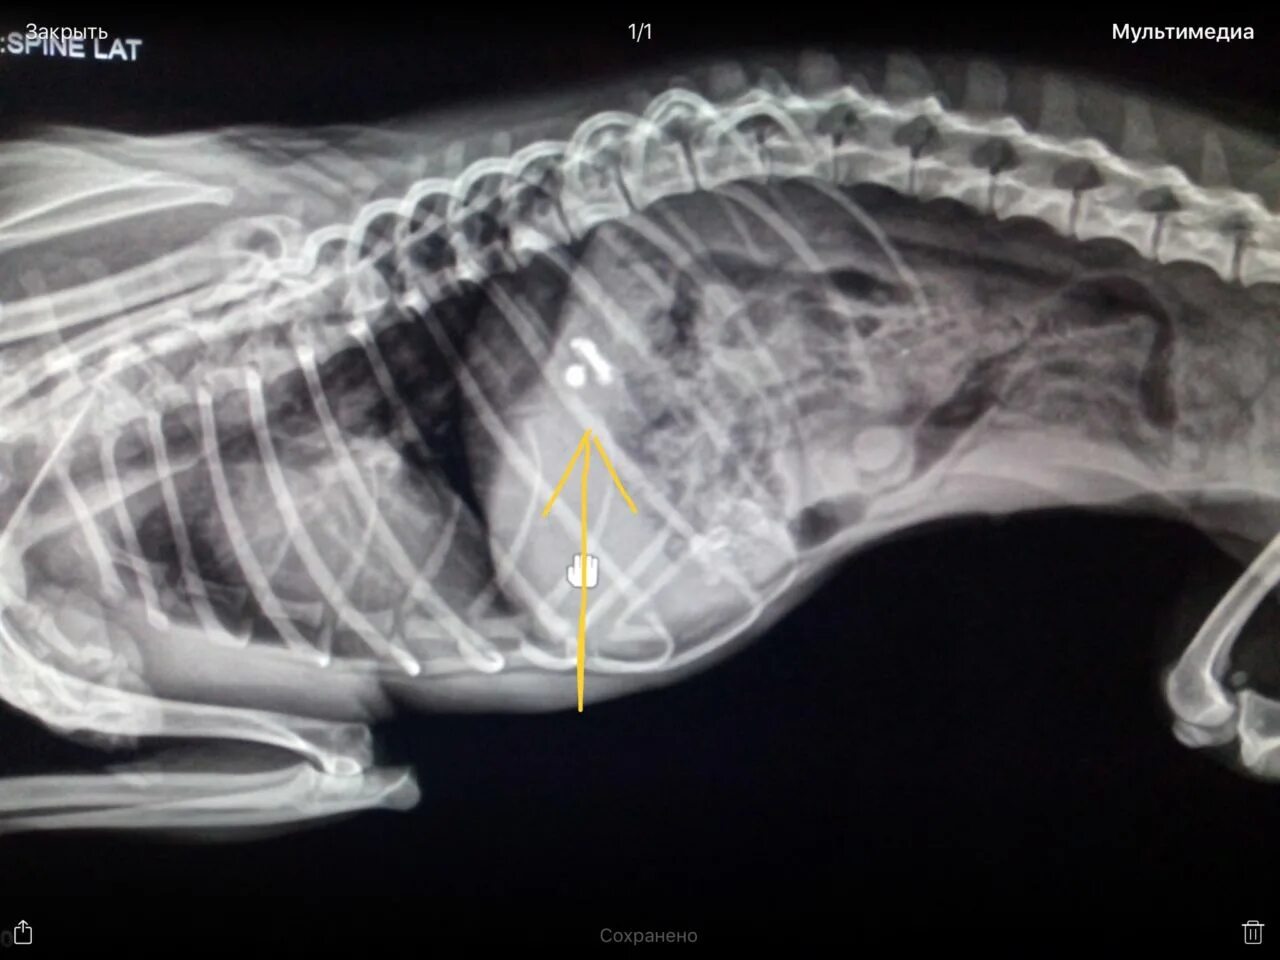 Собака съела 2. Инородное тело в желудке у собаки рентген. Предметы которые проглотили собаки. Инородный предмет в желудке у собаки.